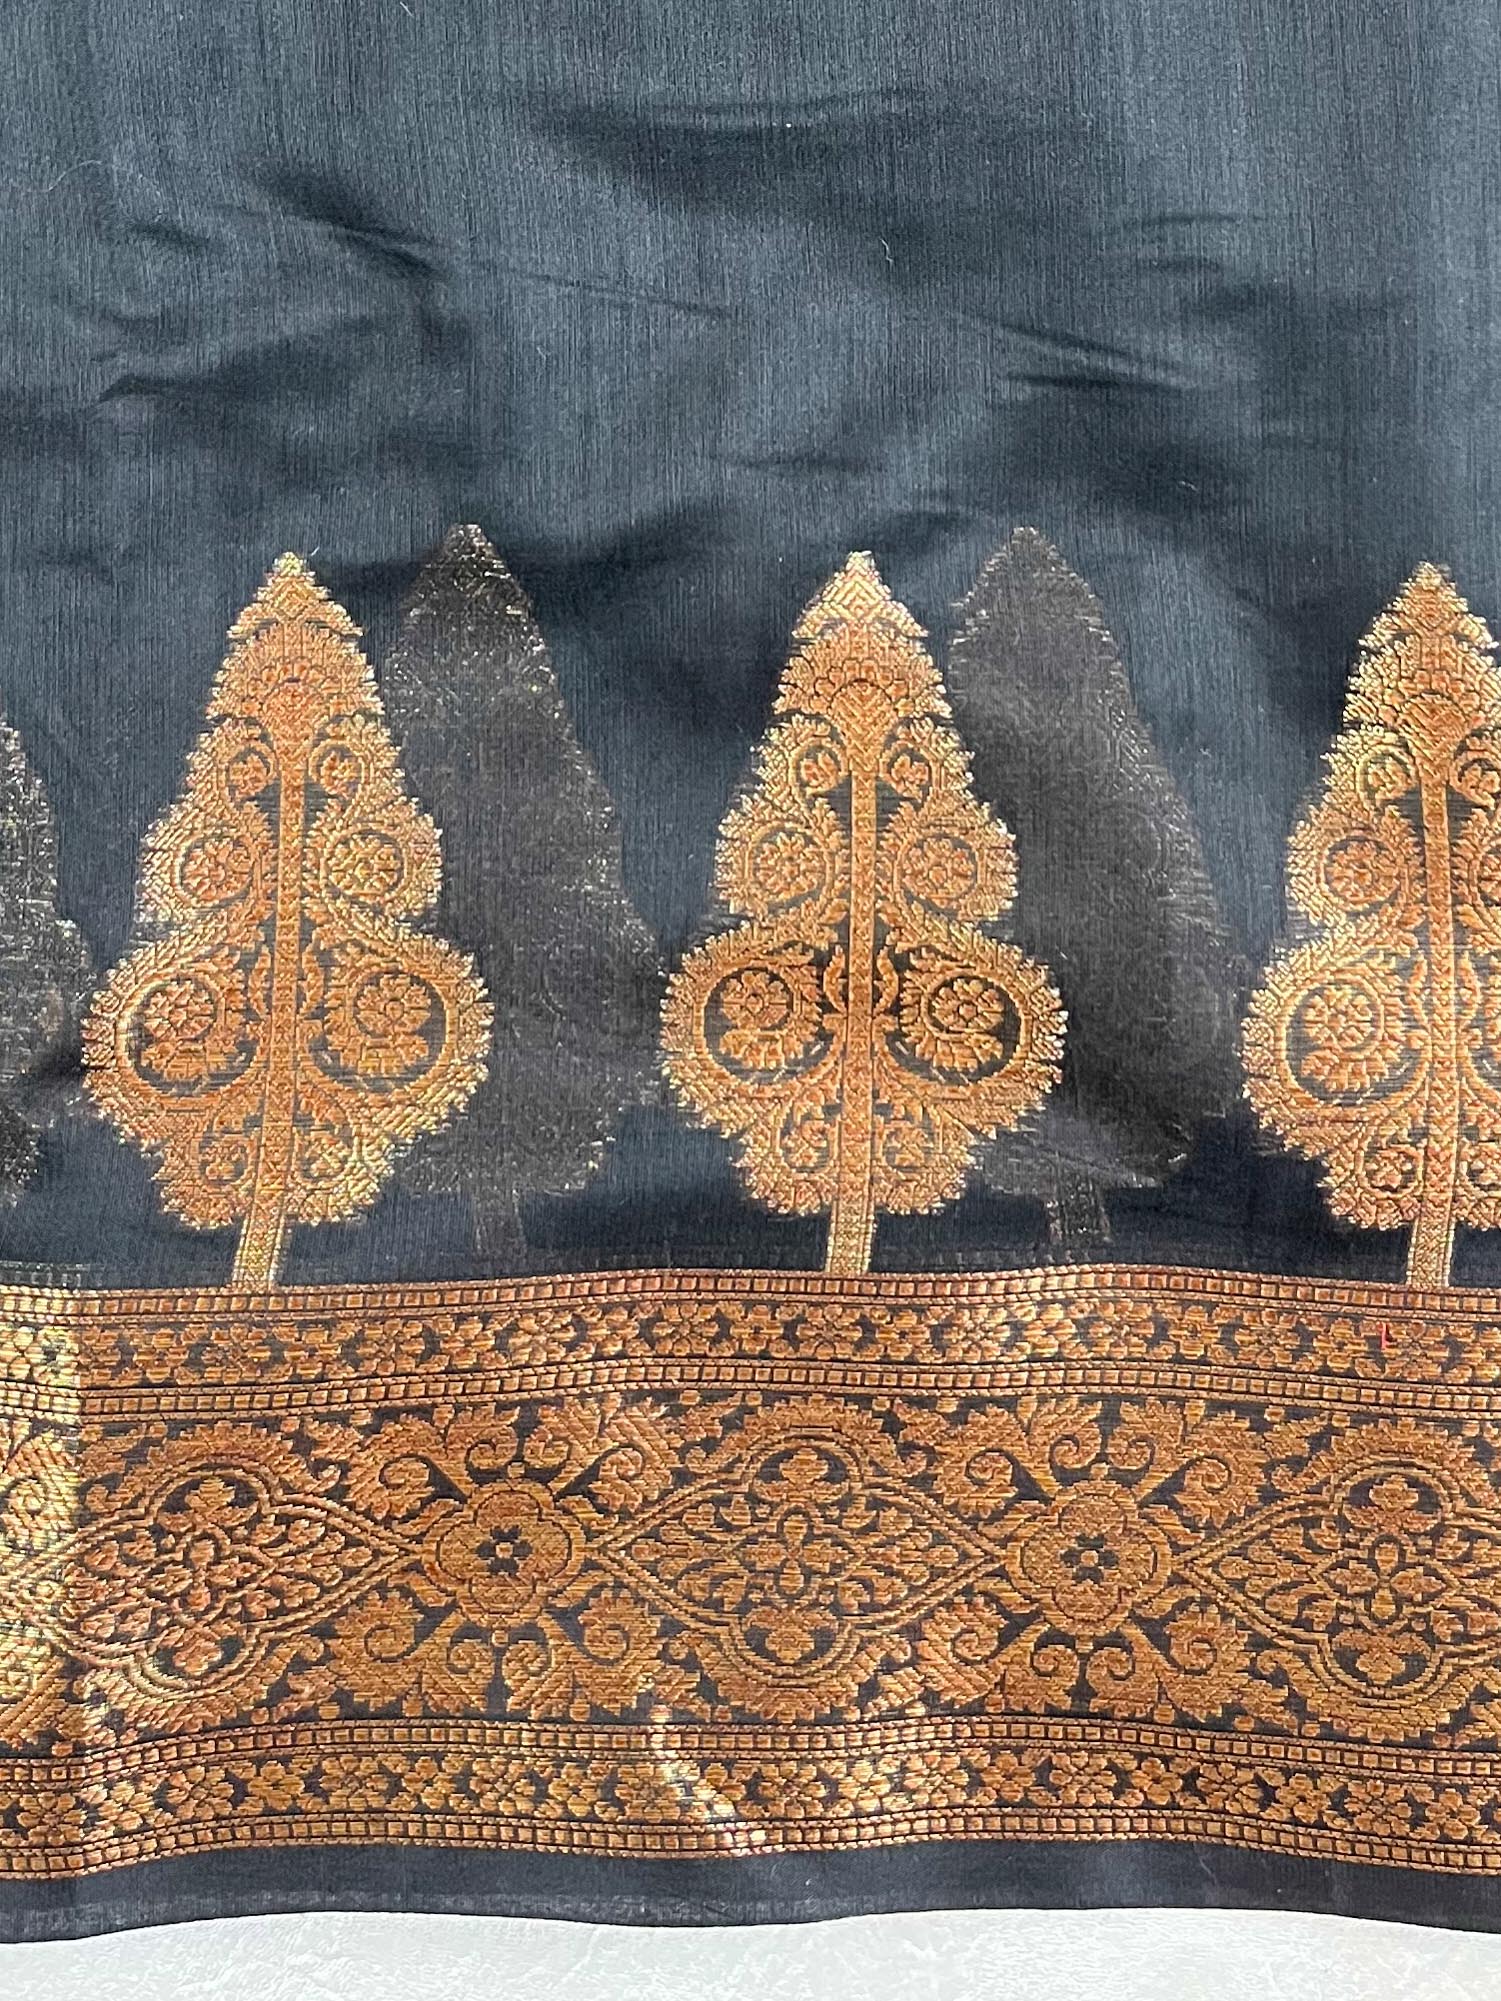 Banarasee Handwoven Pure Silk Cotton Saree With Antique Zari Buti & Border-Black